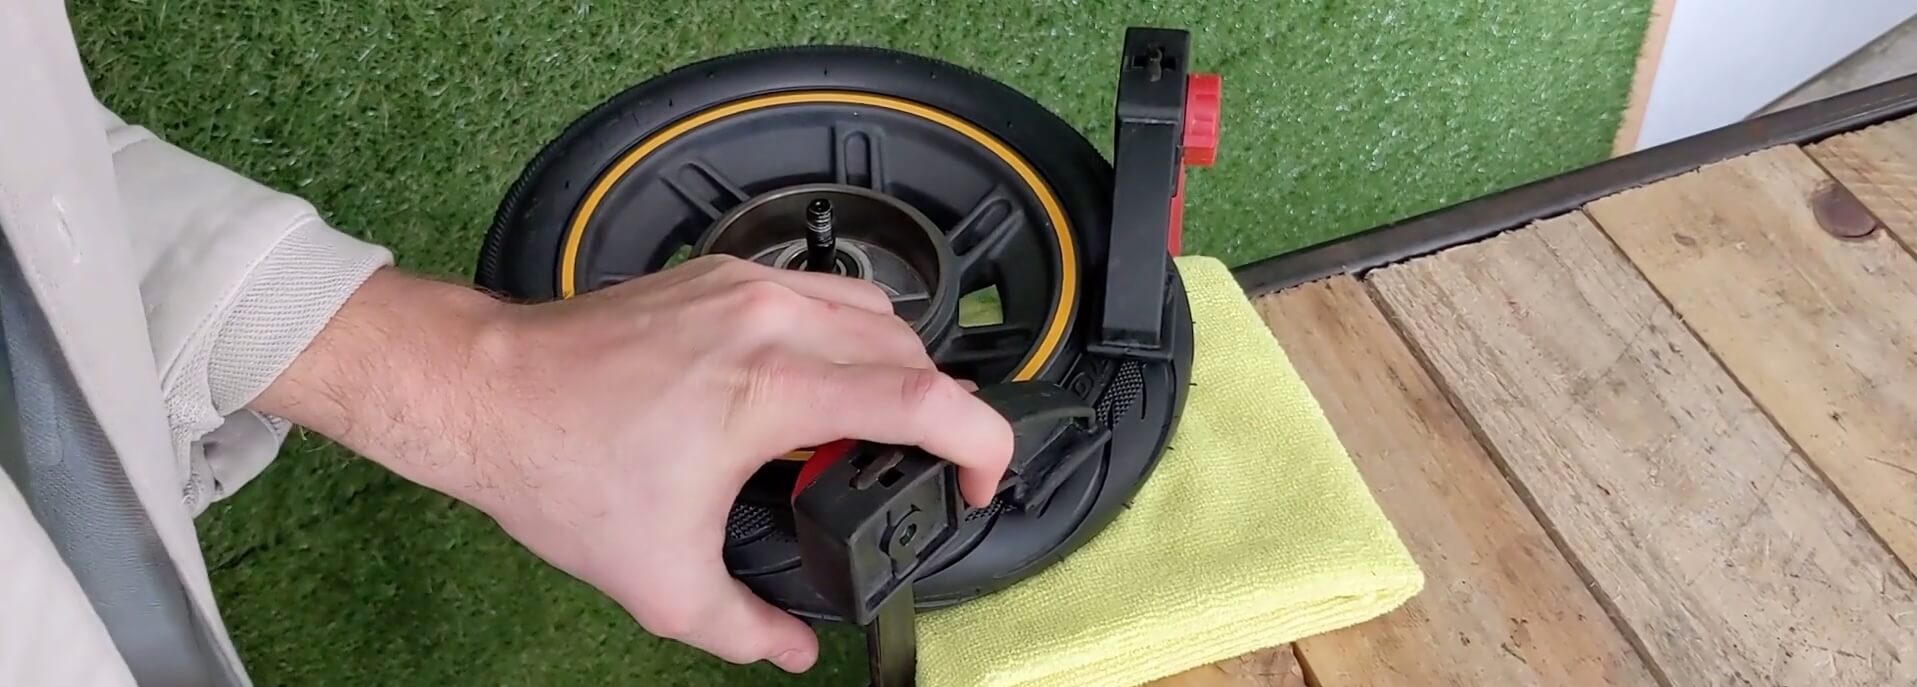 Décoller le pneu de la jante